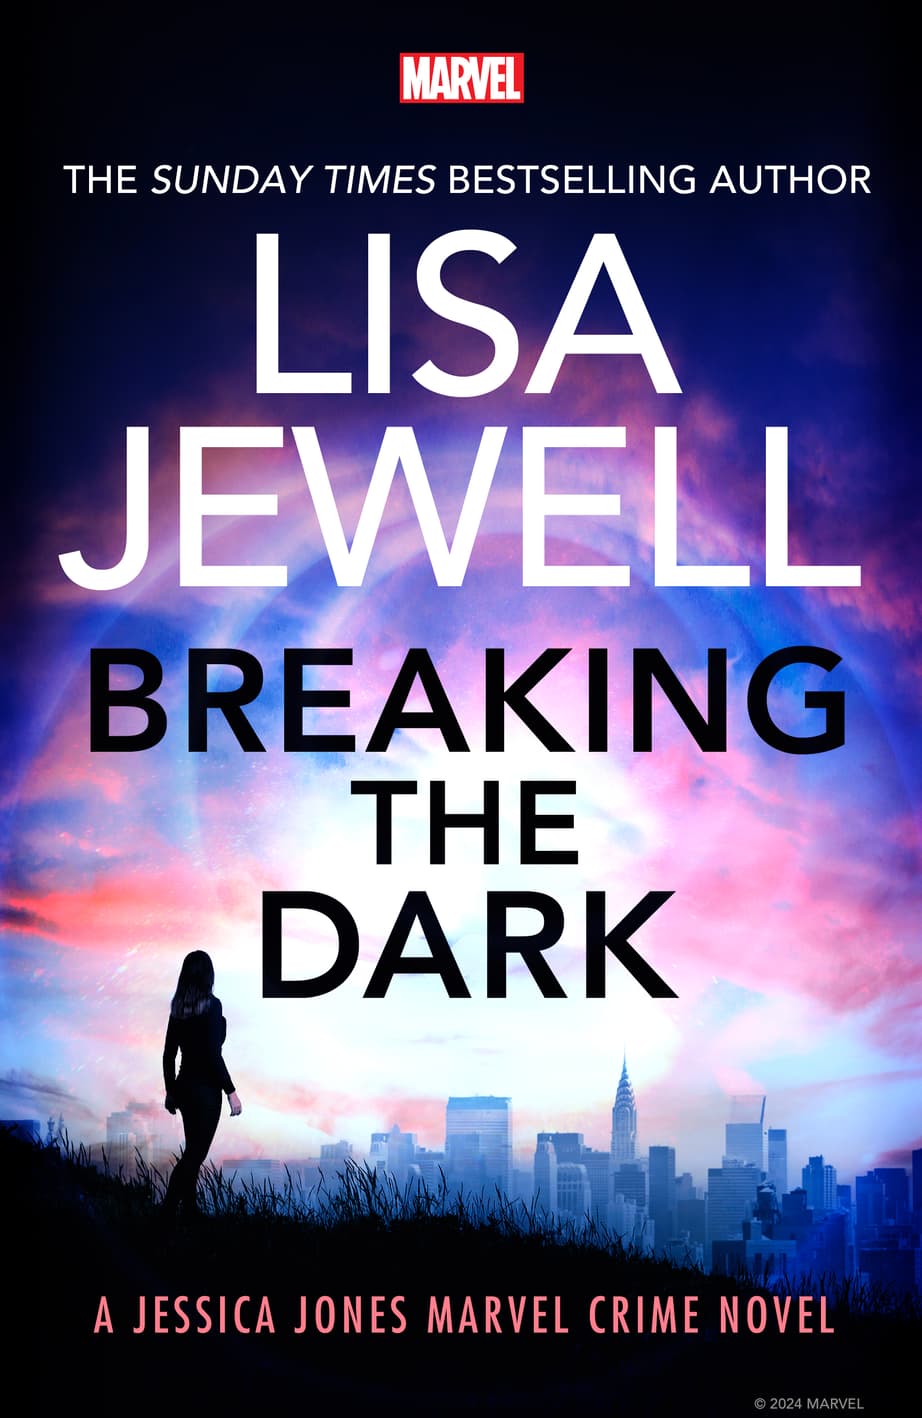 'Breaking the Dark: A Jessica Jones Marvel Crime Novel' UK Cover (Penguin Random House UK)